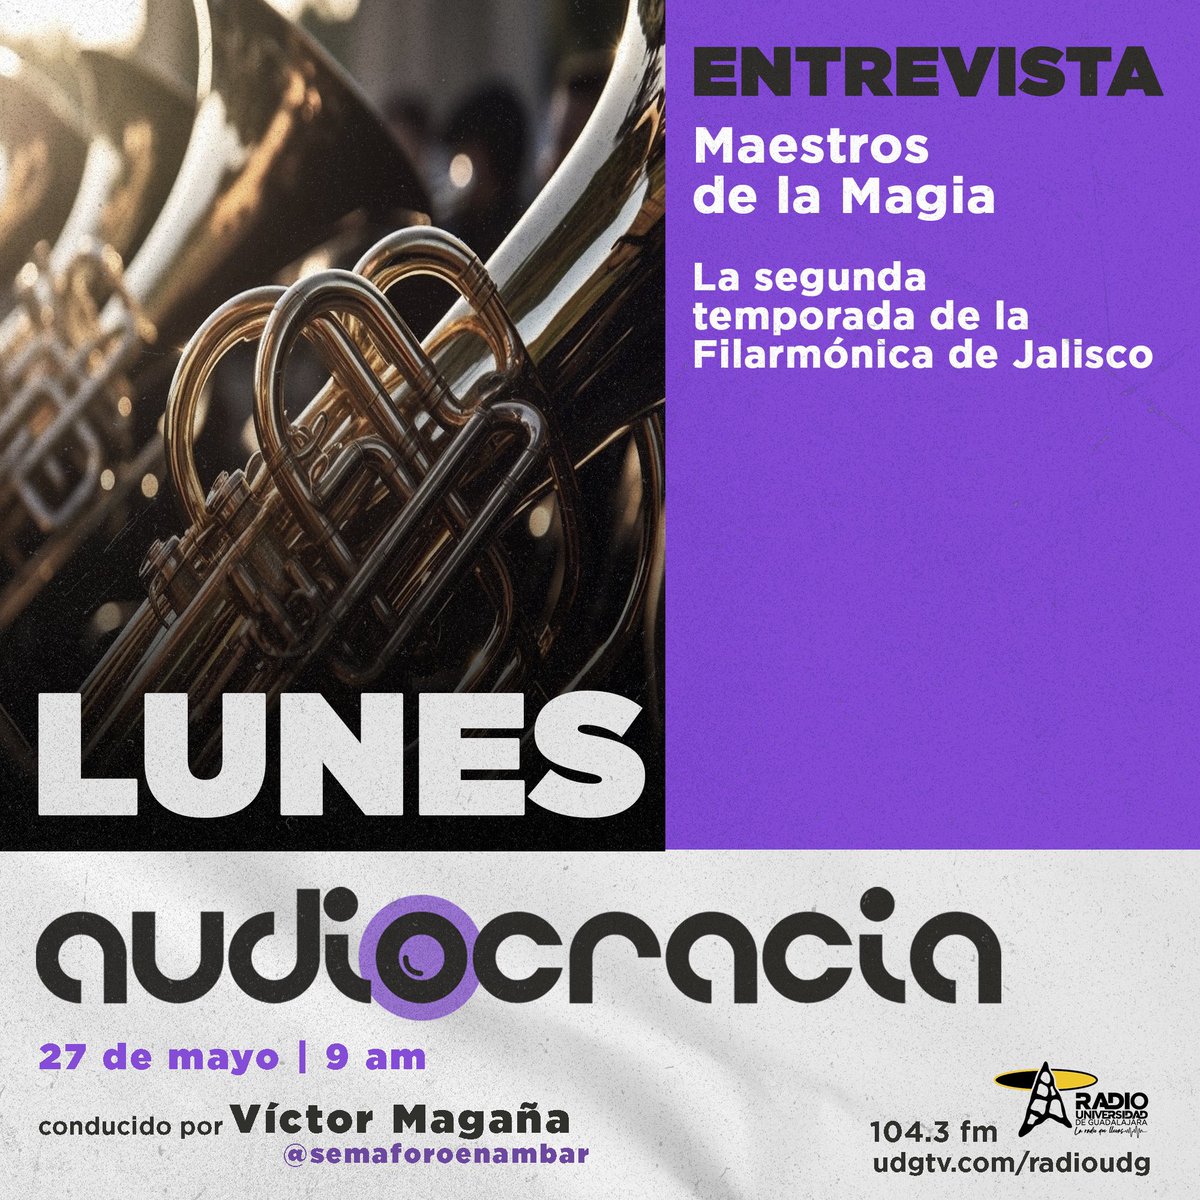 Este lunes en #Audiocracia 🎙️ @semaforoenambar conversará con parte de los organizadores de Maestros de la Magia 🪄 🎼La segunda temporada de la Filarmónica de Jalisco ⌚️9:00 am 📻 104.3 de FM